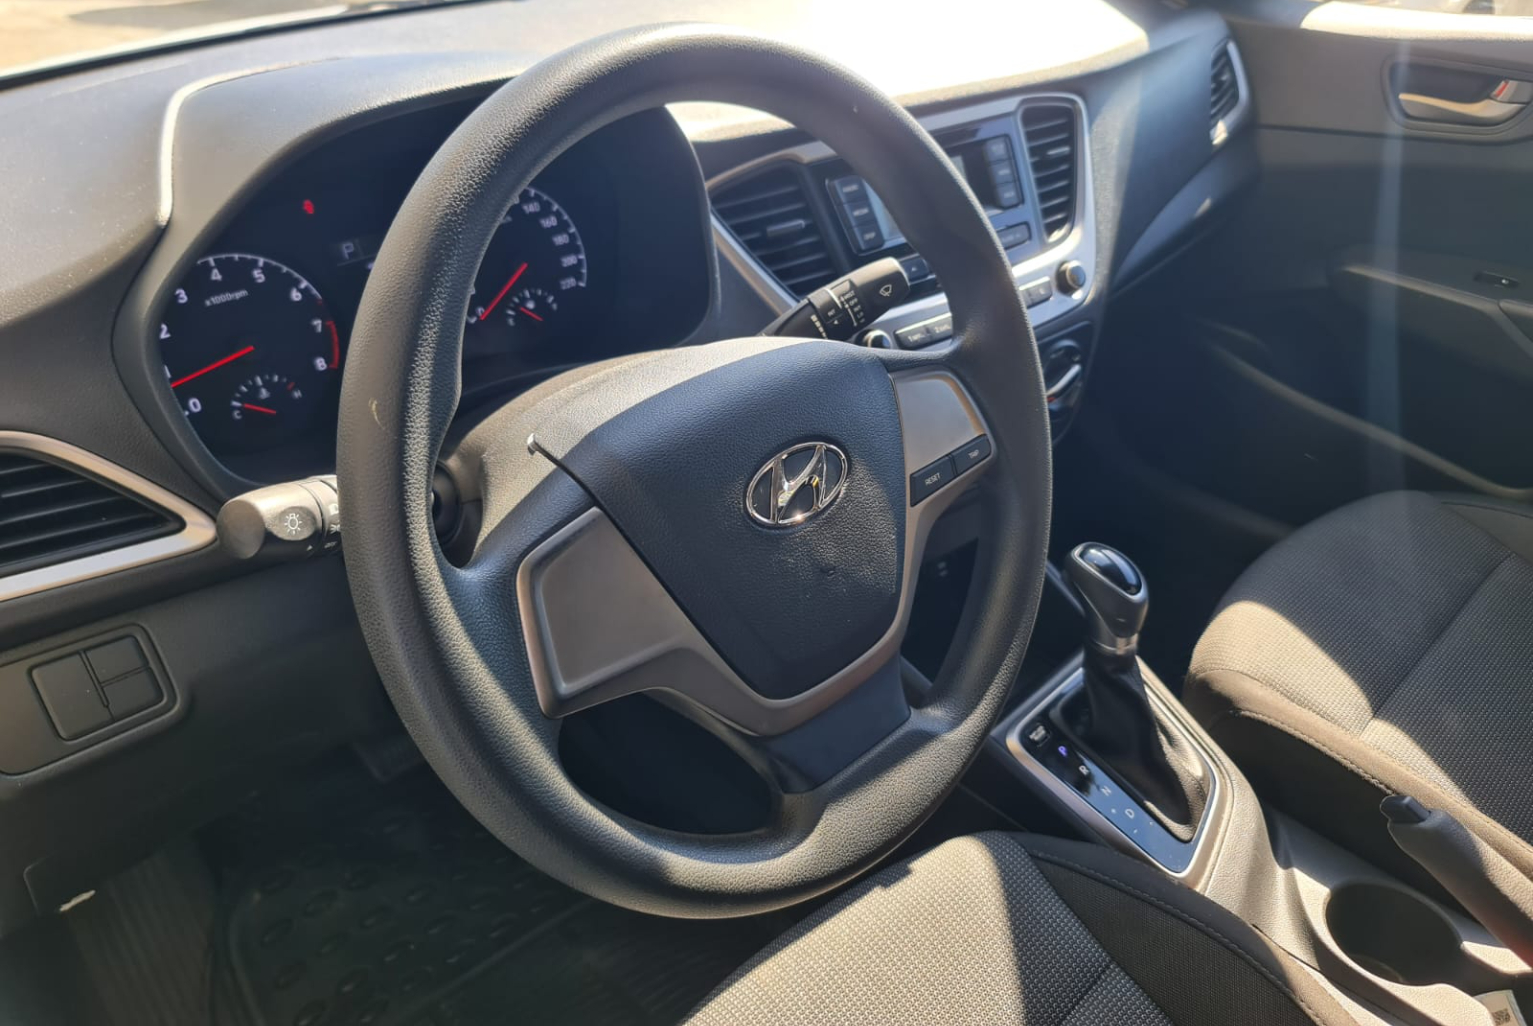 Hyundai Accent 2018 Automático color Plateado, Imagen #7